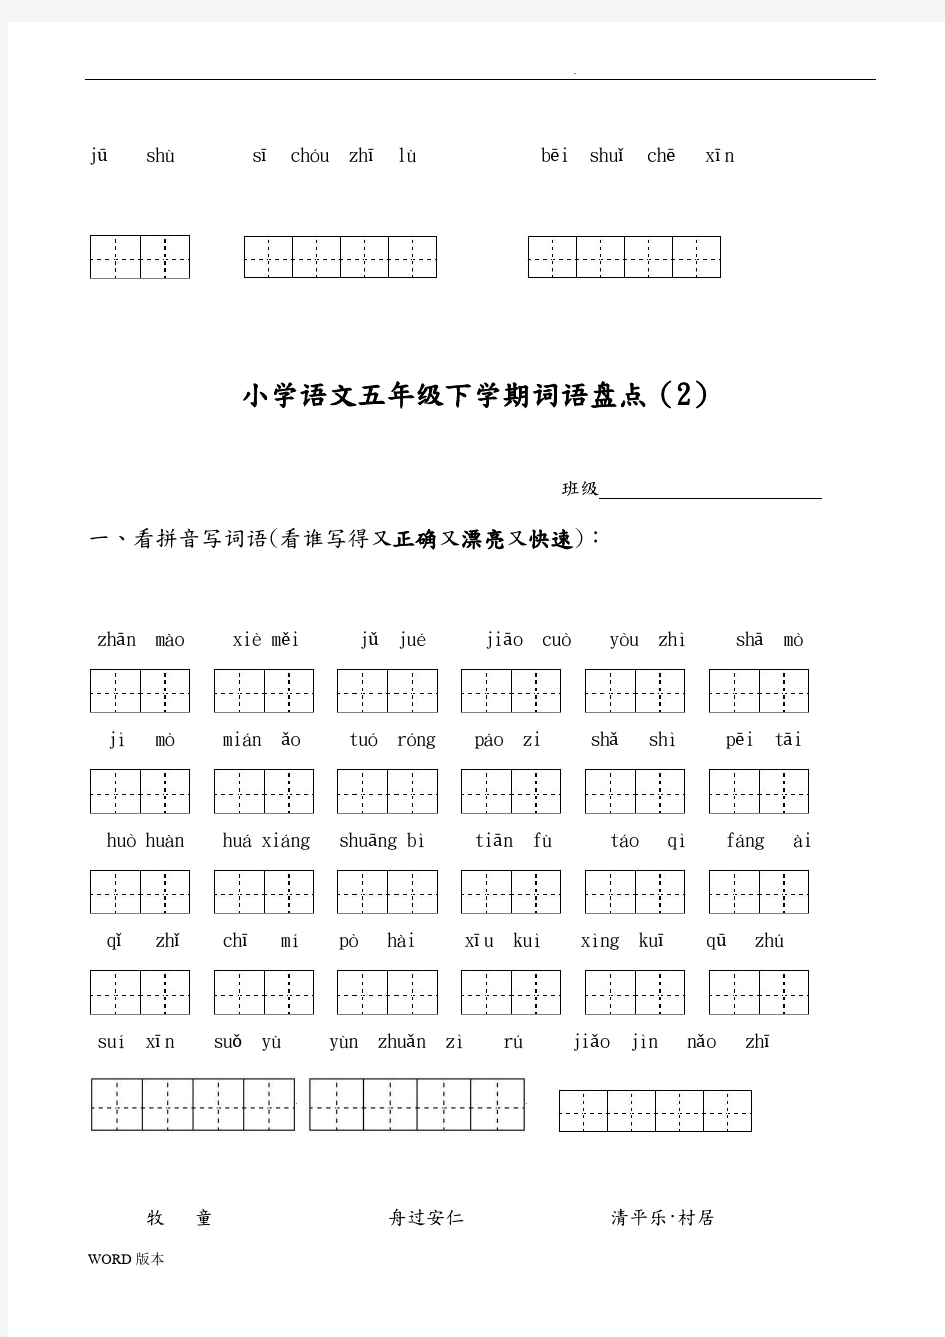 人版小学语文五年级(下册)所有词语看拼音写汉字